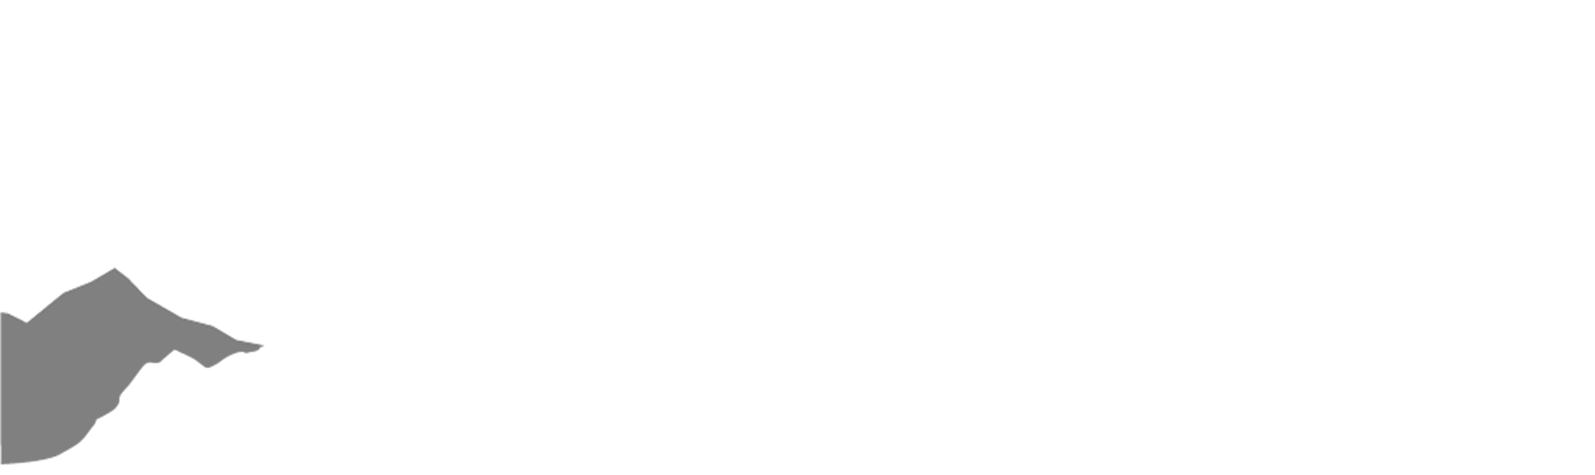 glisi-logo-white-1-restored